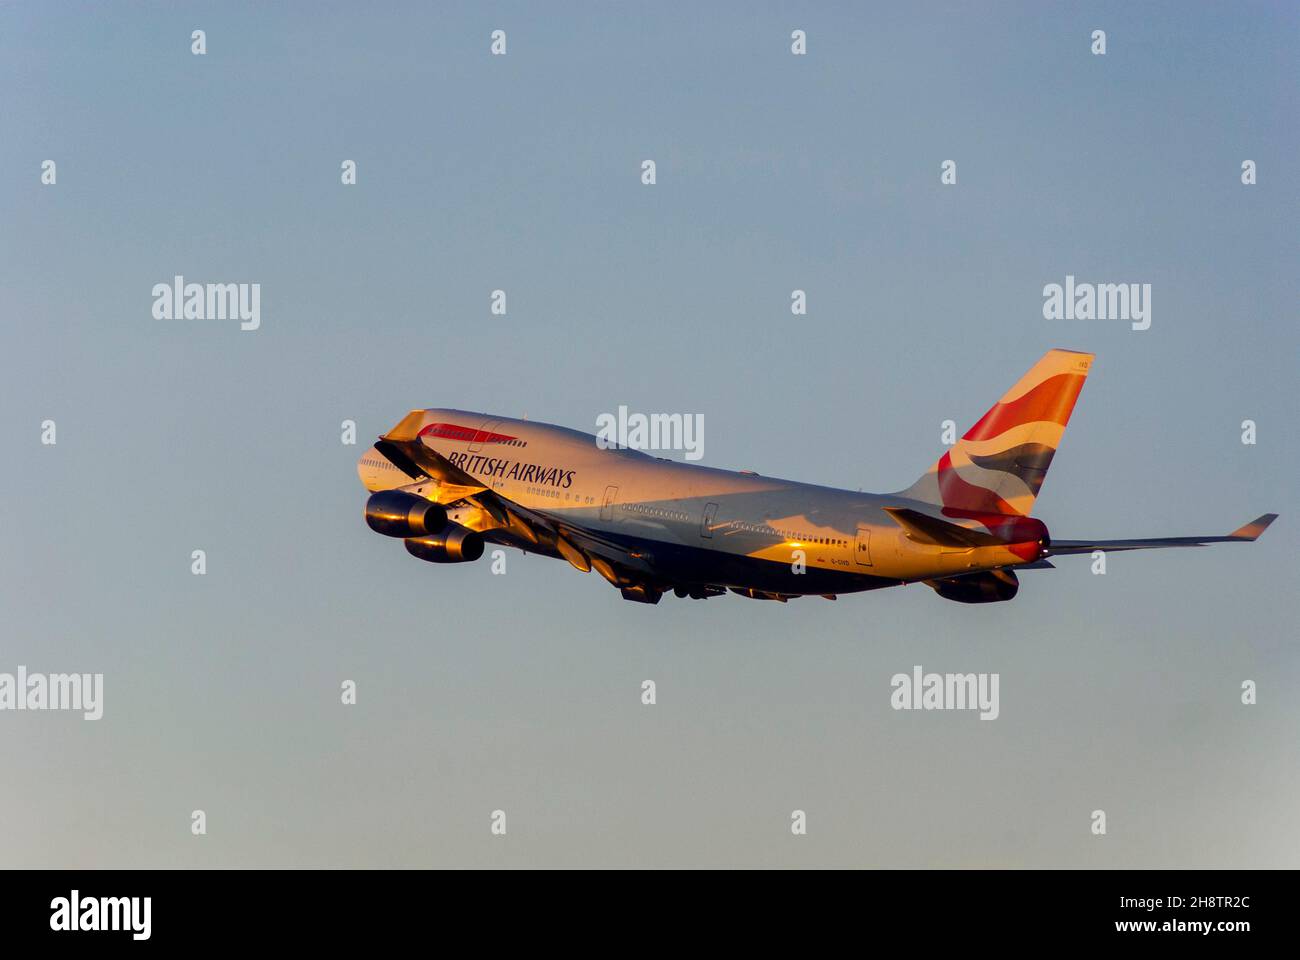 British Airways Boeing 747 Jumbo Jet aereo jet climbing dopo il decollo dall'aeroporto di Londra Heathrow, Regno Unito, al crepuscolo con caldo bagliore dal tramonto Foto Stock